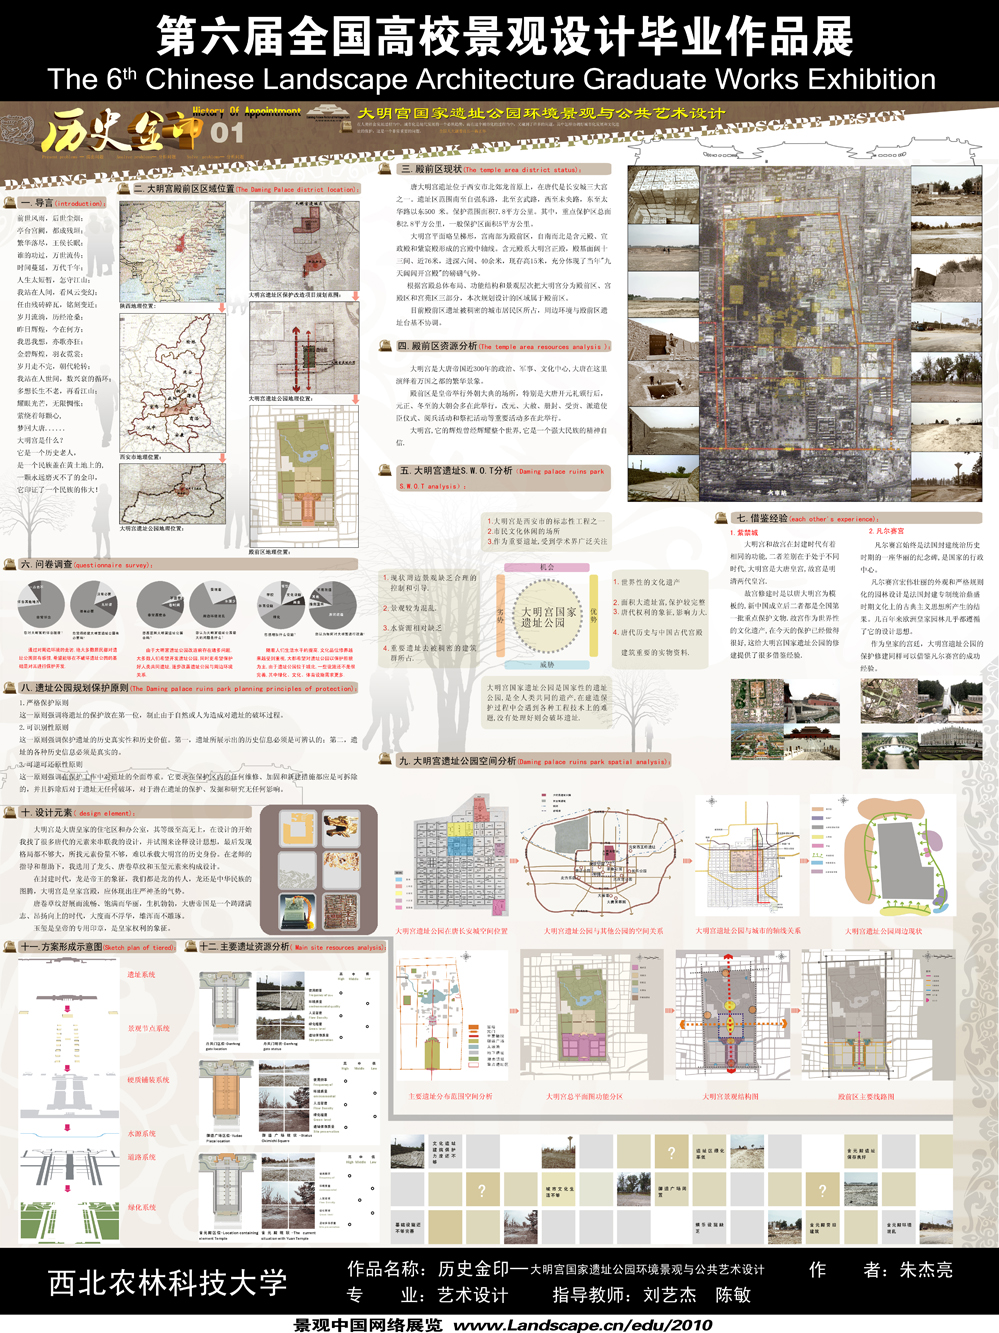 历史金印—大明宫国家遗址公园环境景观与公共艺术设计-1